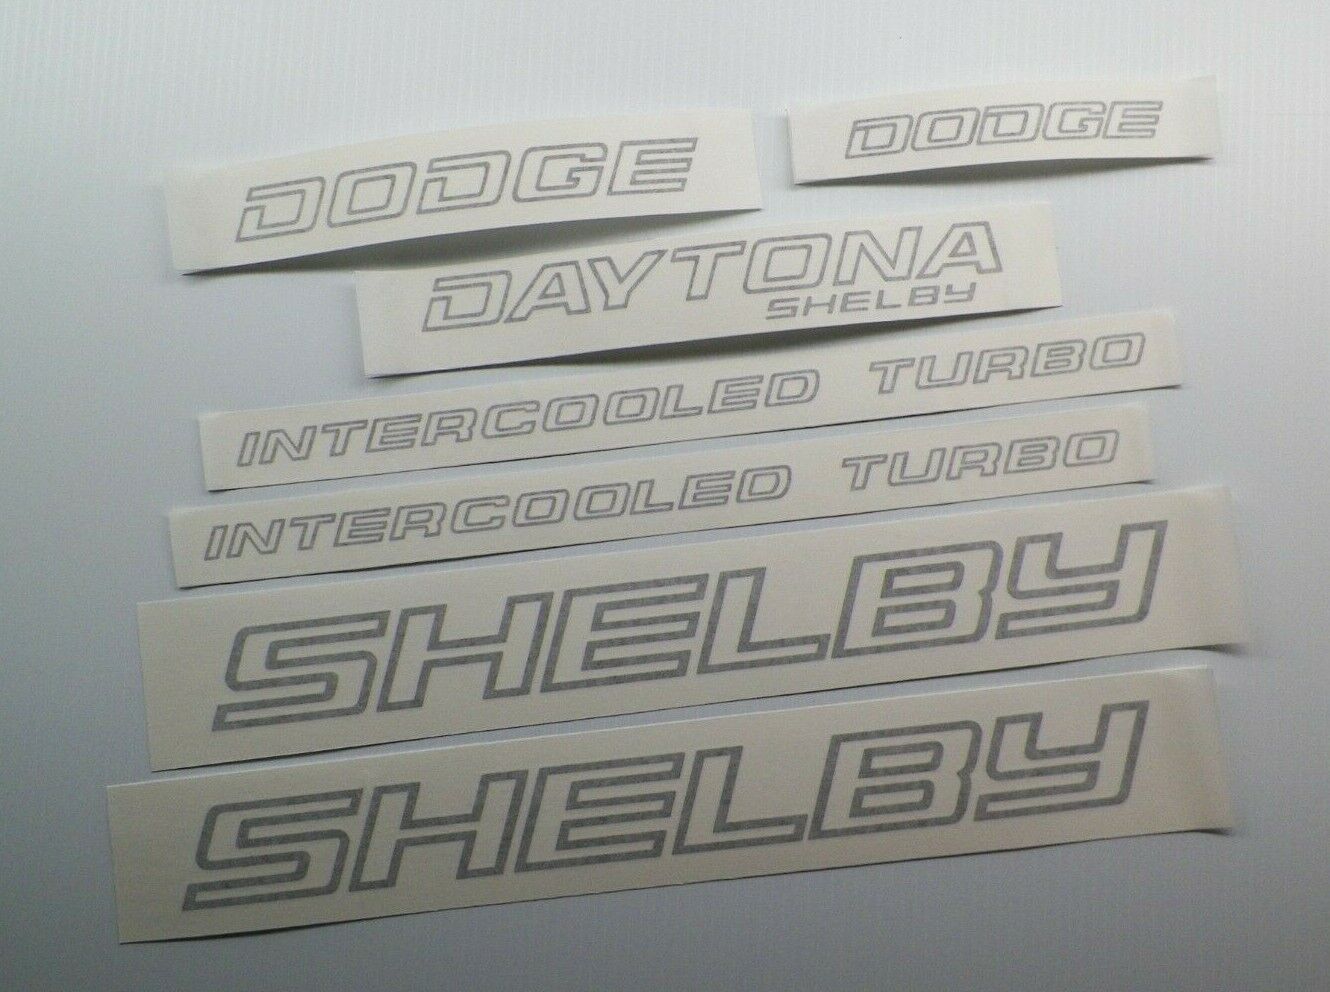 New 1989-1992 Shelby Dodge Daytona Decal Set